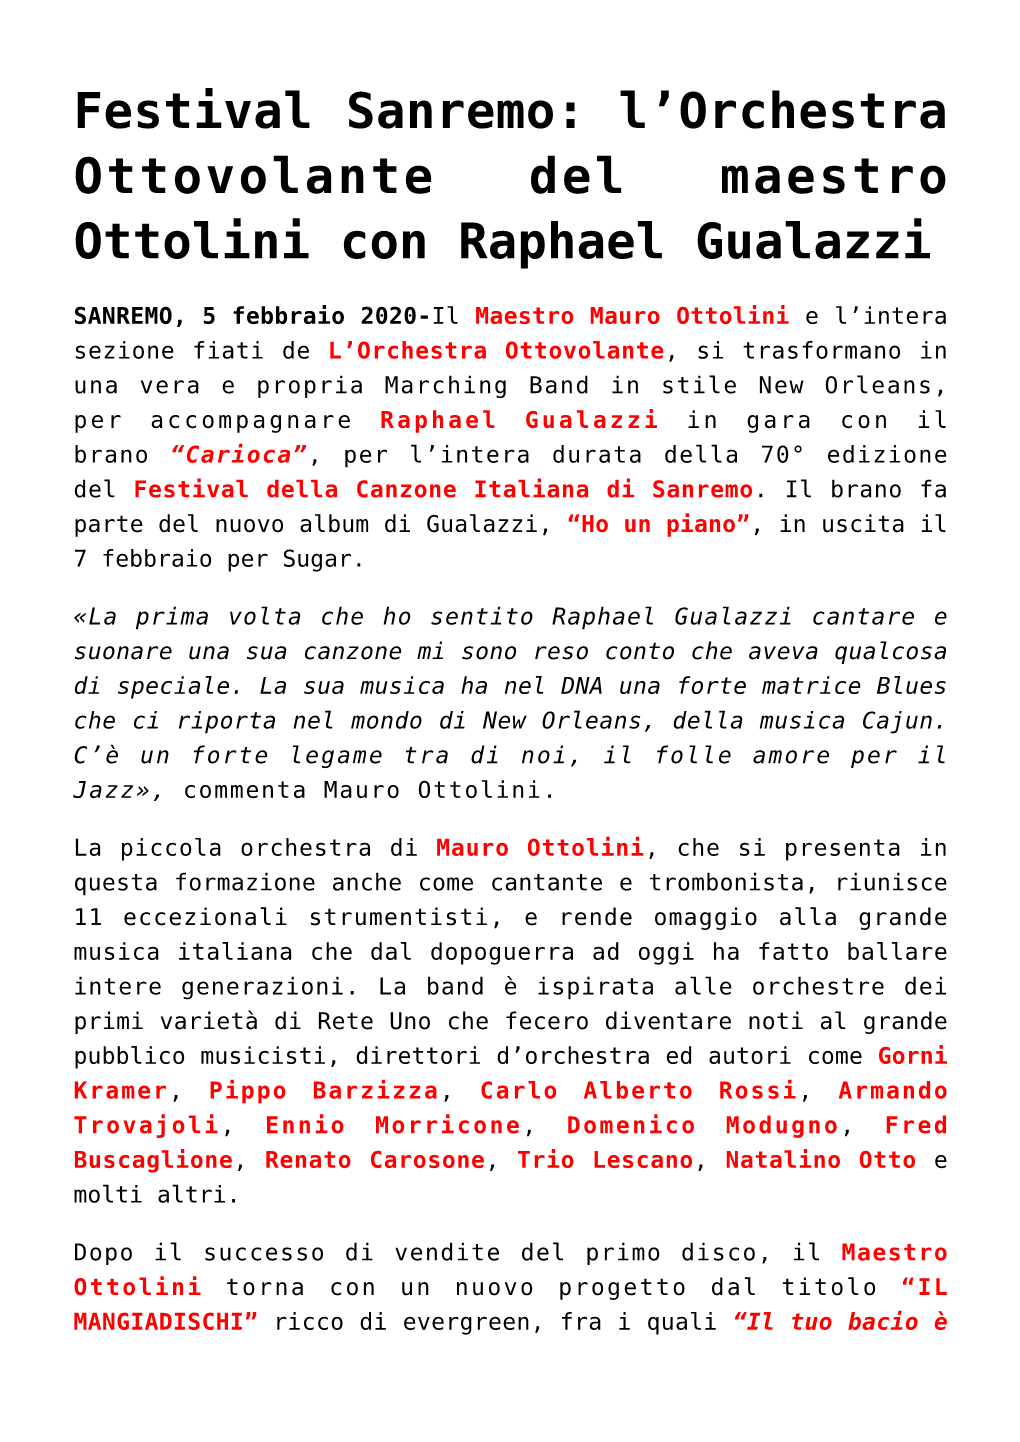 Festival Sanremo: L&#8217;Orchestra Ottovolante Del Maestro Ottolini Con Raphael Gualazzi